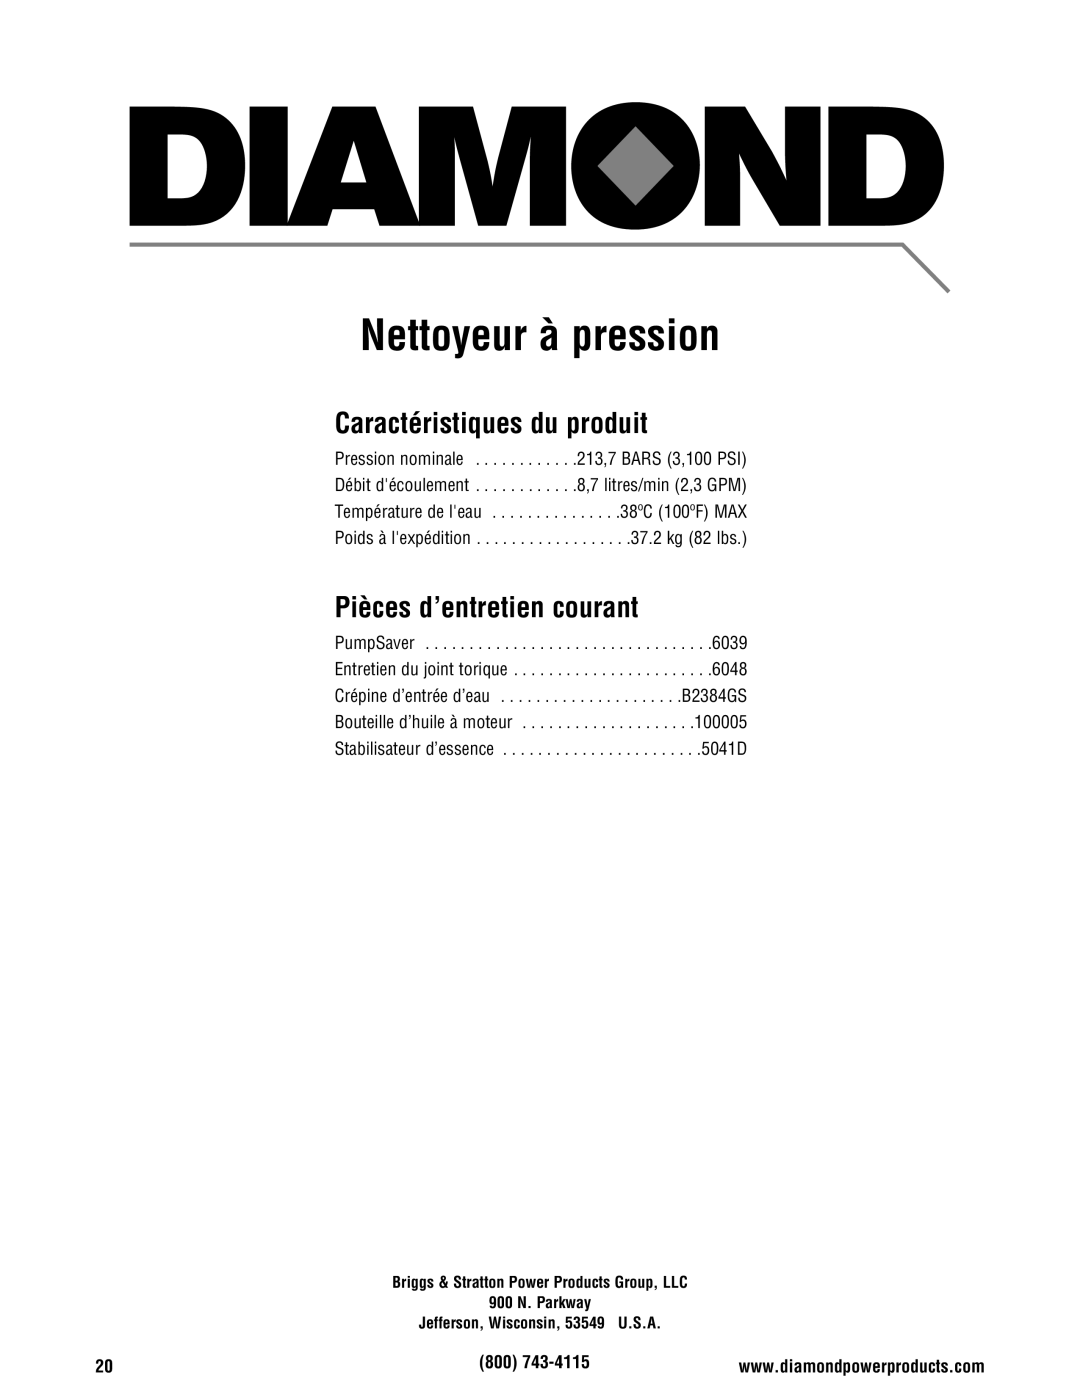 Diamond Power Products 3100 Psi manual Nettoyeur à pression, Caractéristiques du produit, Pièces d’entretien courant 